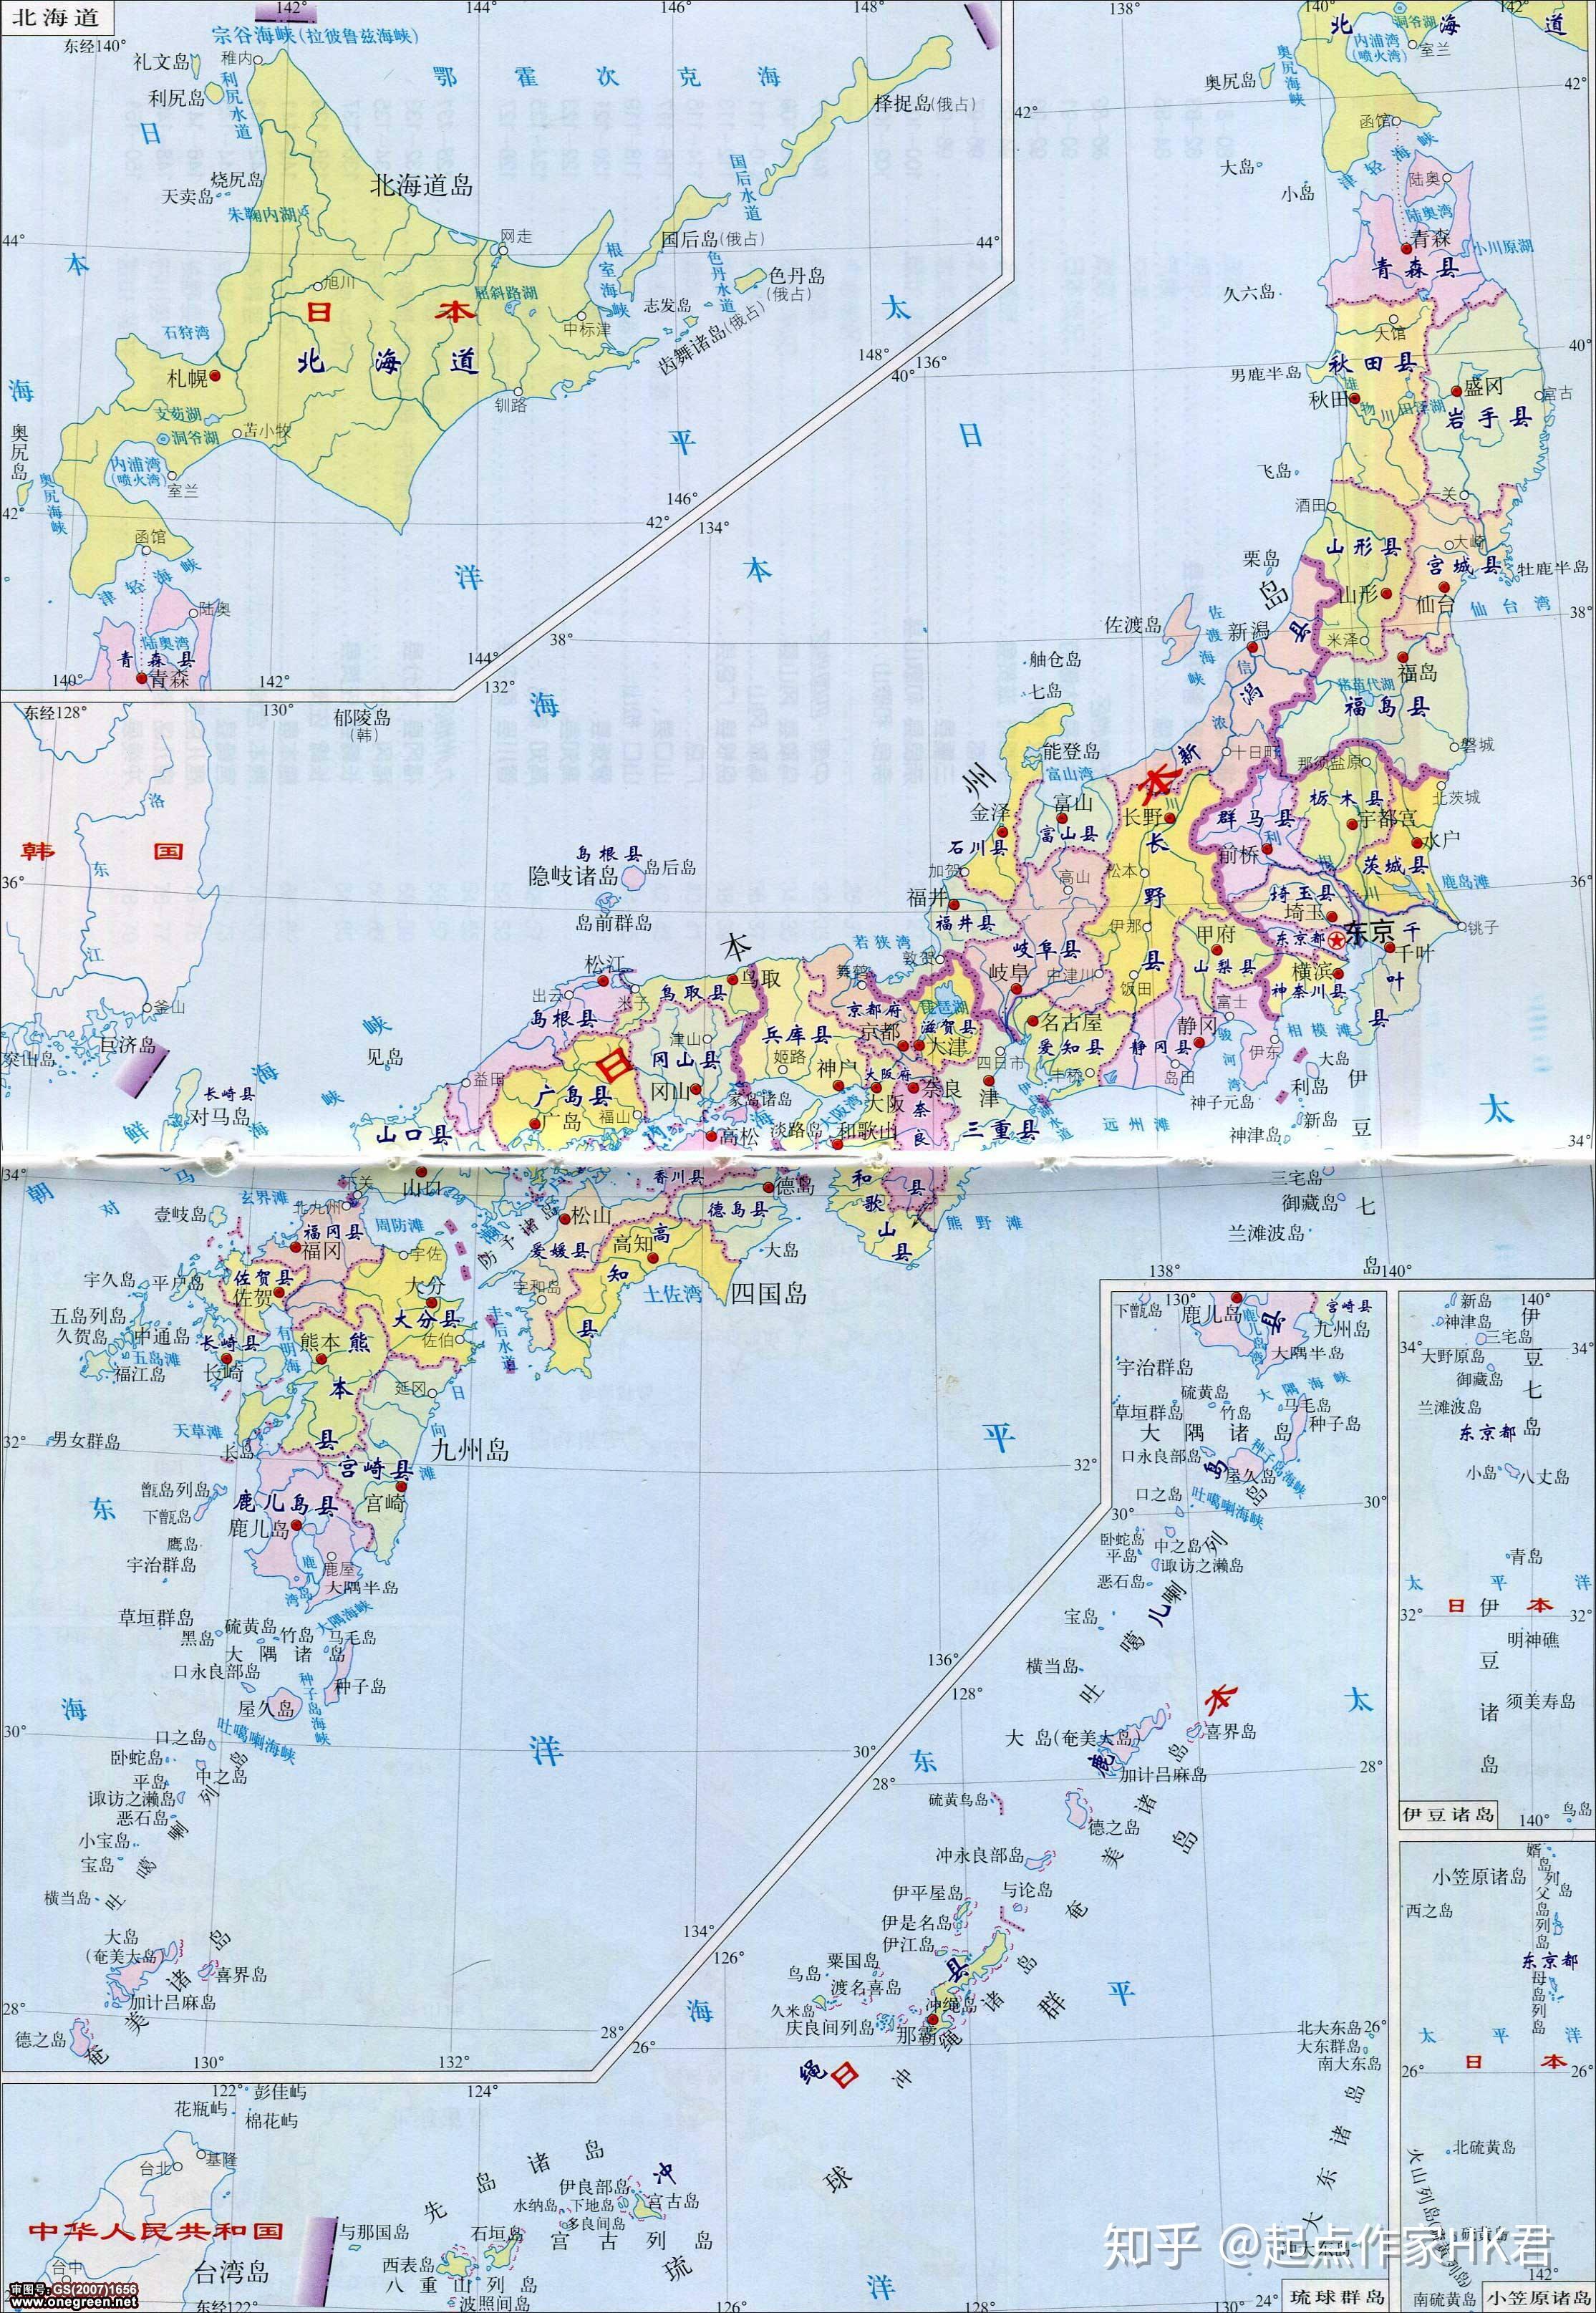 我们是xx(地级/直辖)市xx县,日本是xx县xx市, 上图就是岐阜县地图